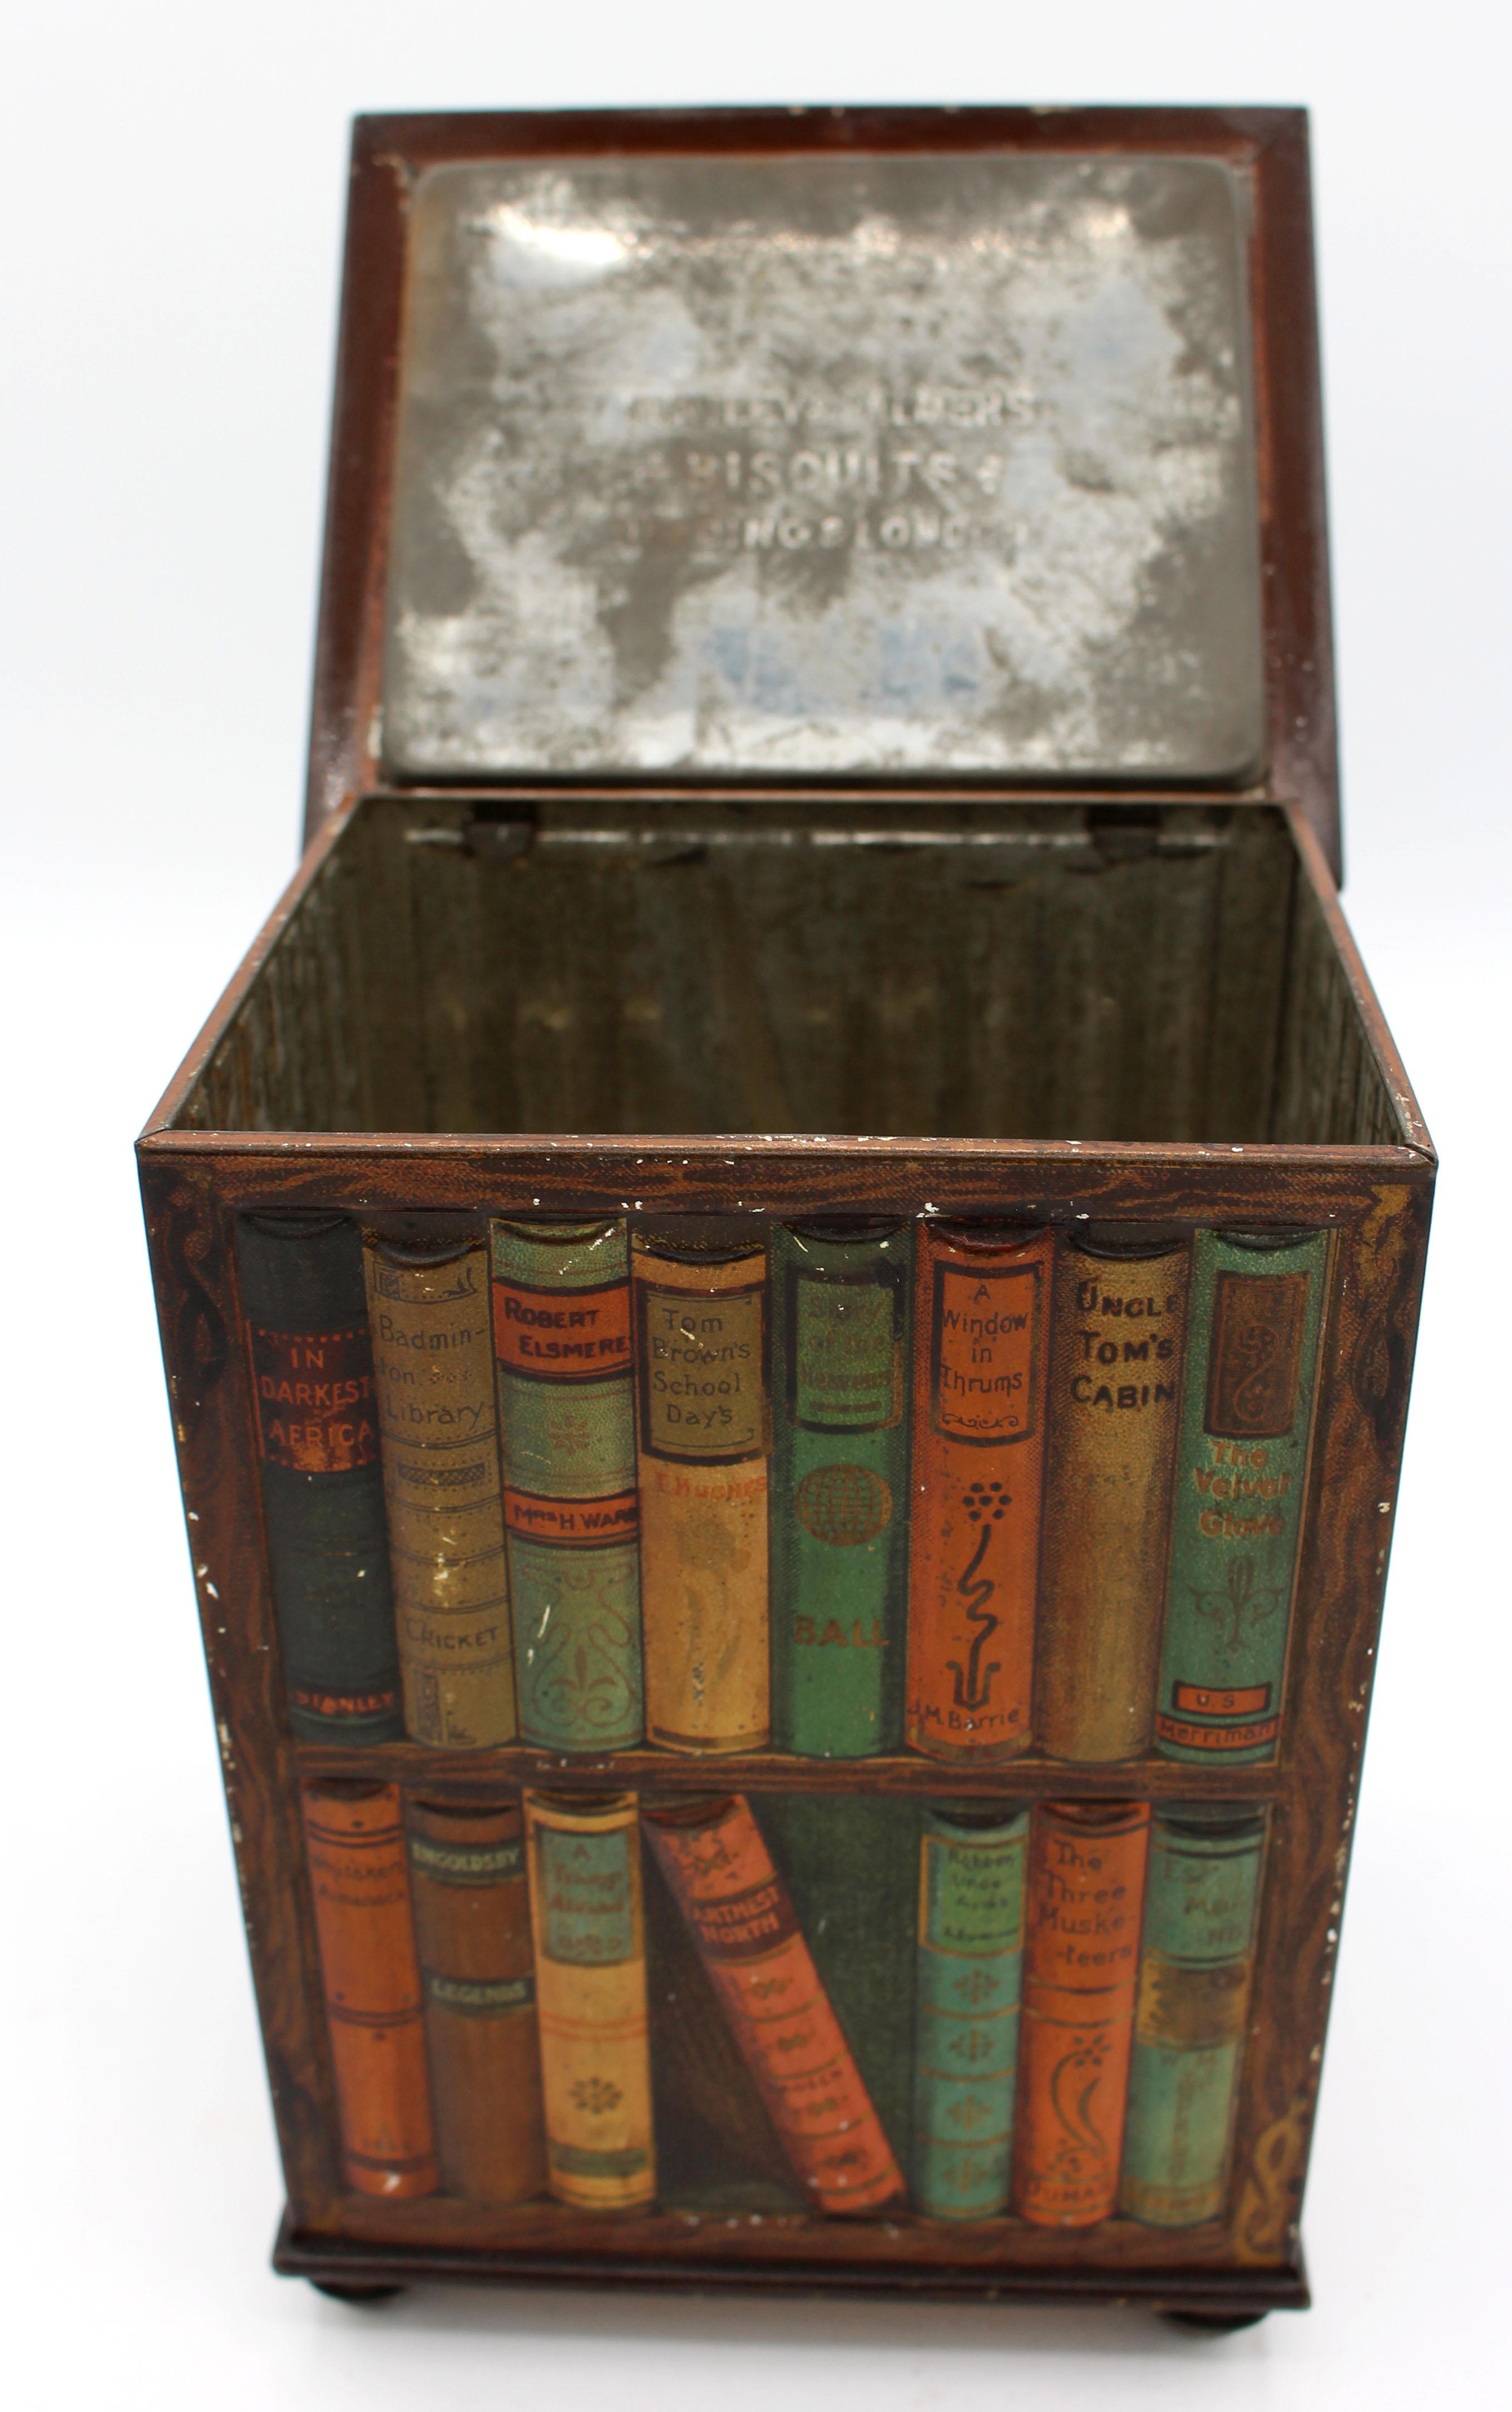 Fausse boîte en fer blanc pour bibliothèque tournante par Huntley & Palmer, 1905, anglais. Sous la forme d'une bibliothèque tournante remplie de romans classiques, remarquez le détail - les couvertures sont visibles sur les côtés. Bon état général